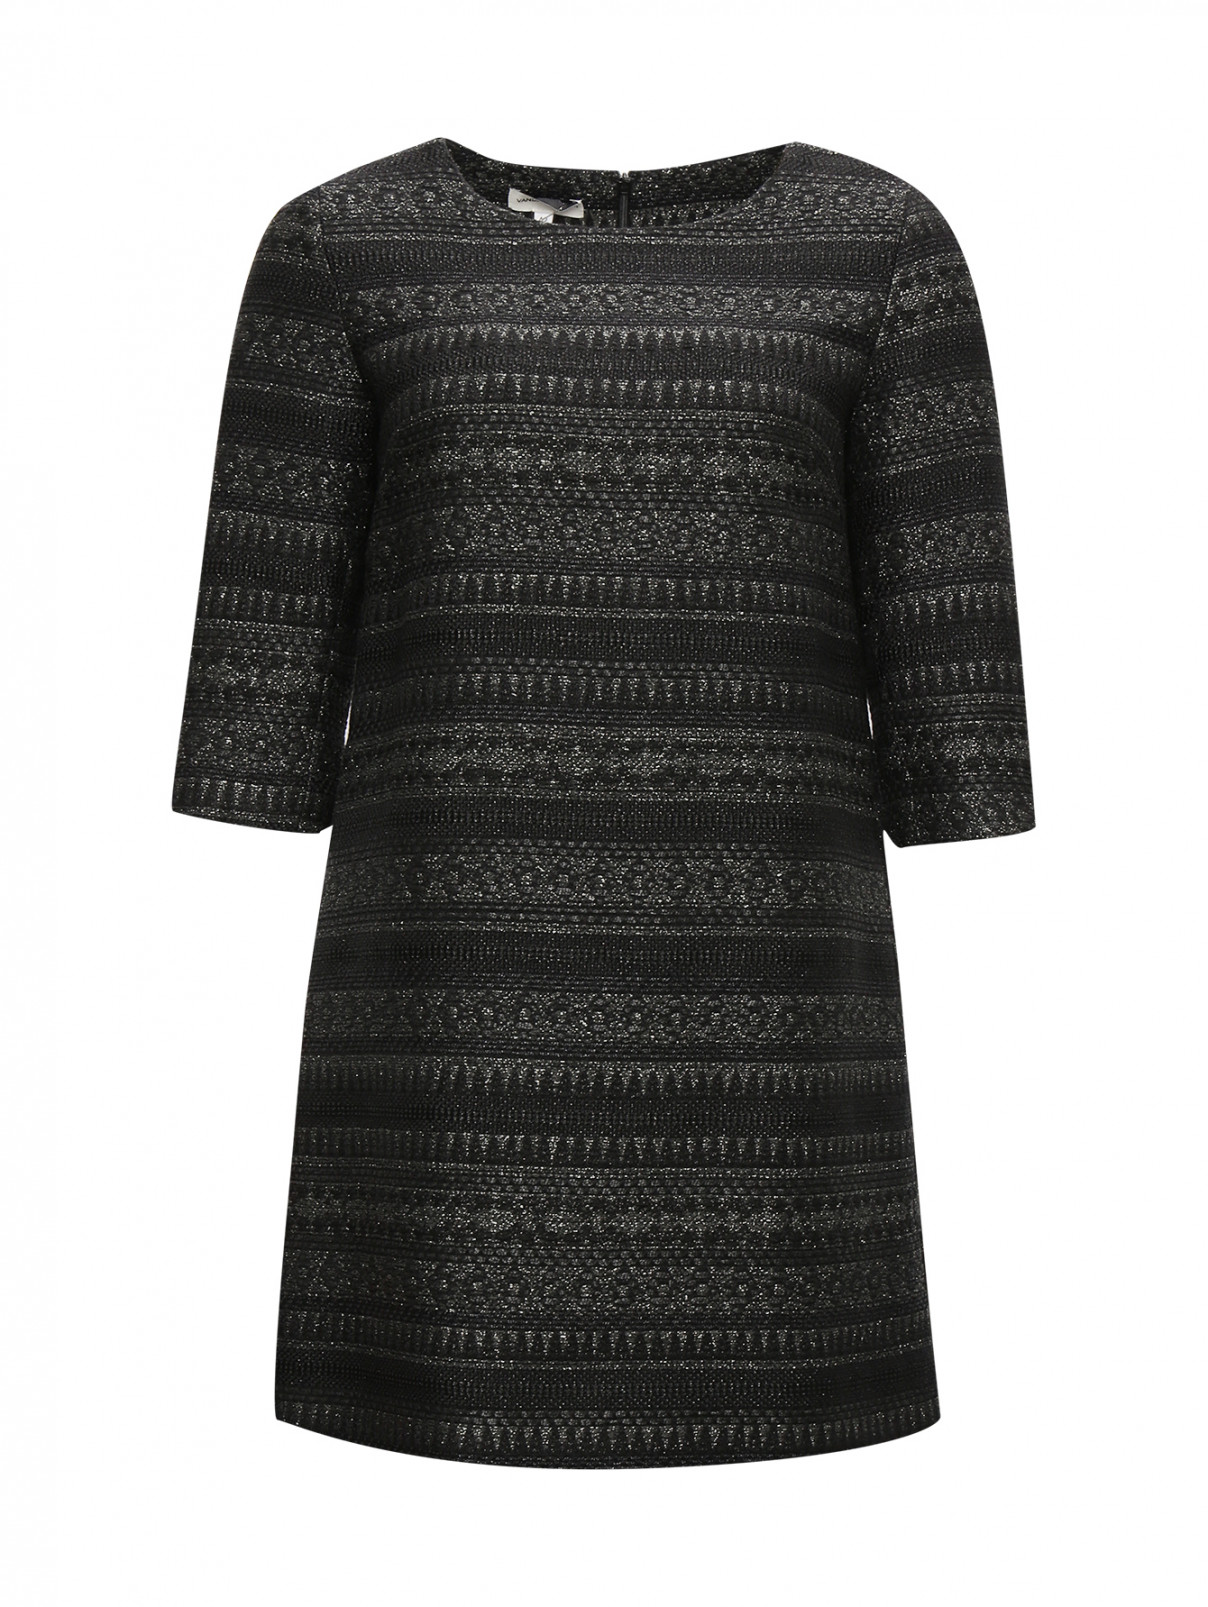 Мини-платье прямого фасона с рукавами 3/4 Vanda Catucci  –  Общий вид  – Цвет:  Черный